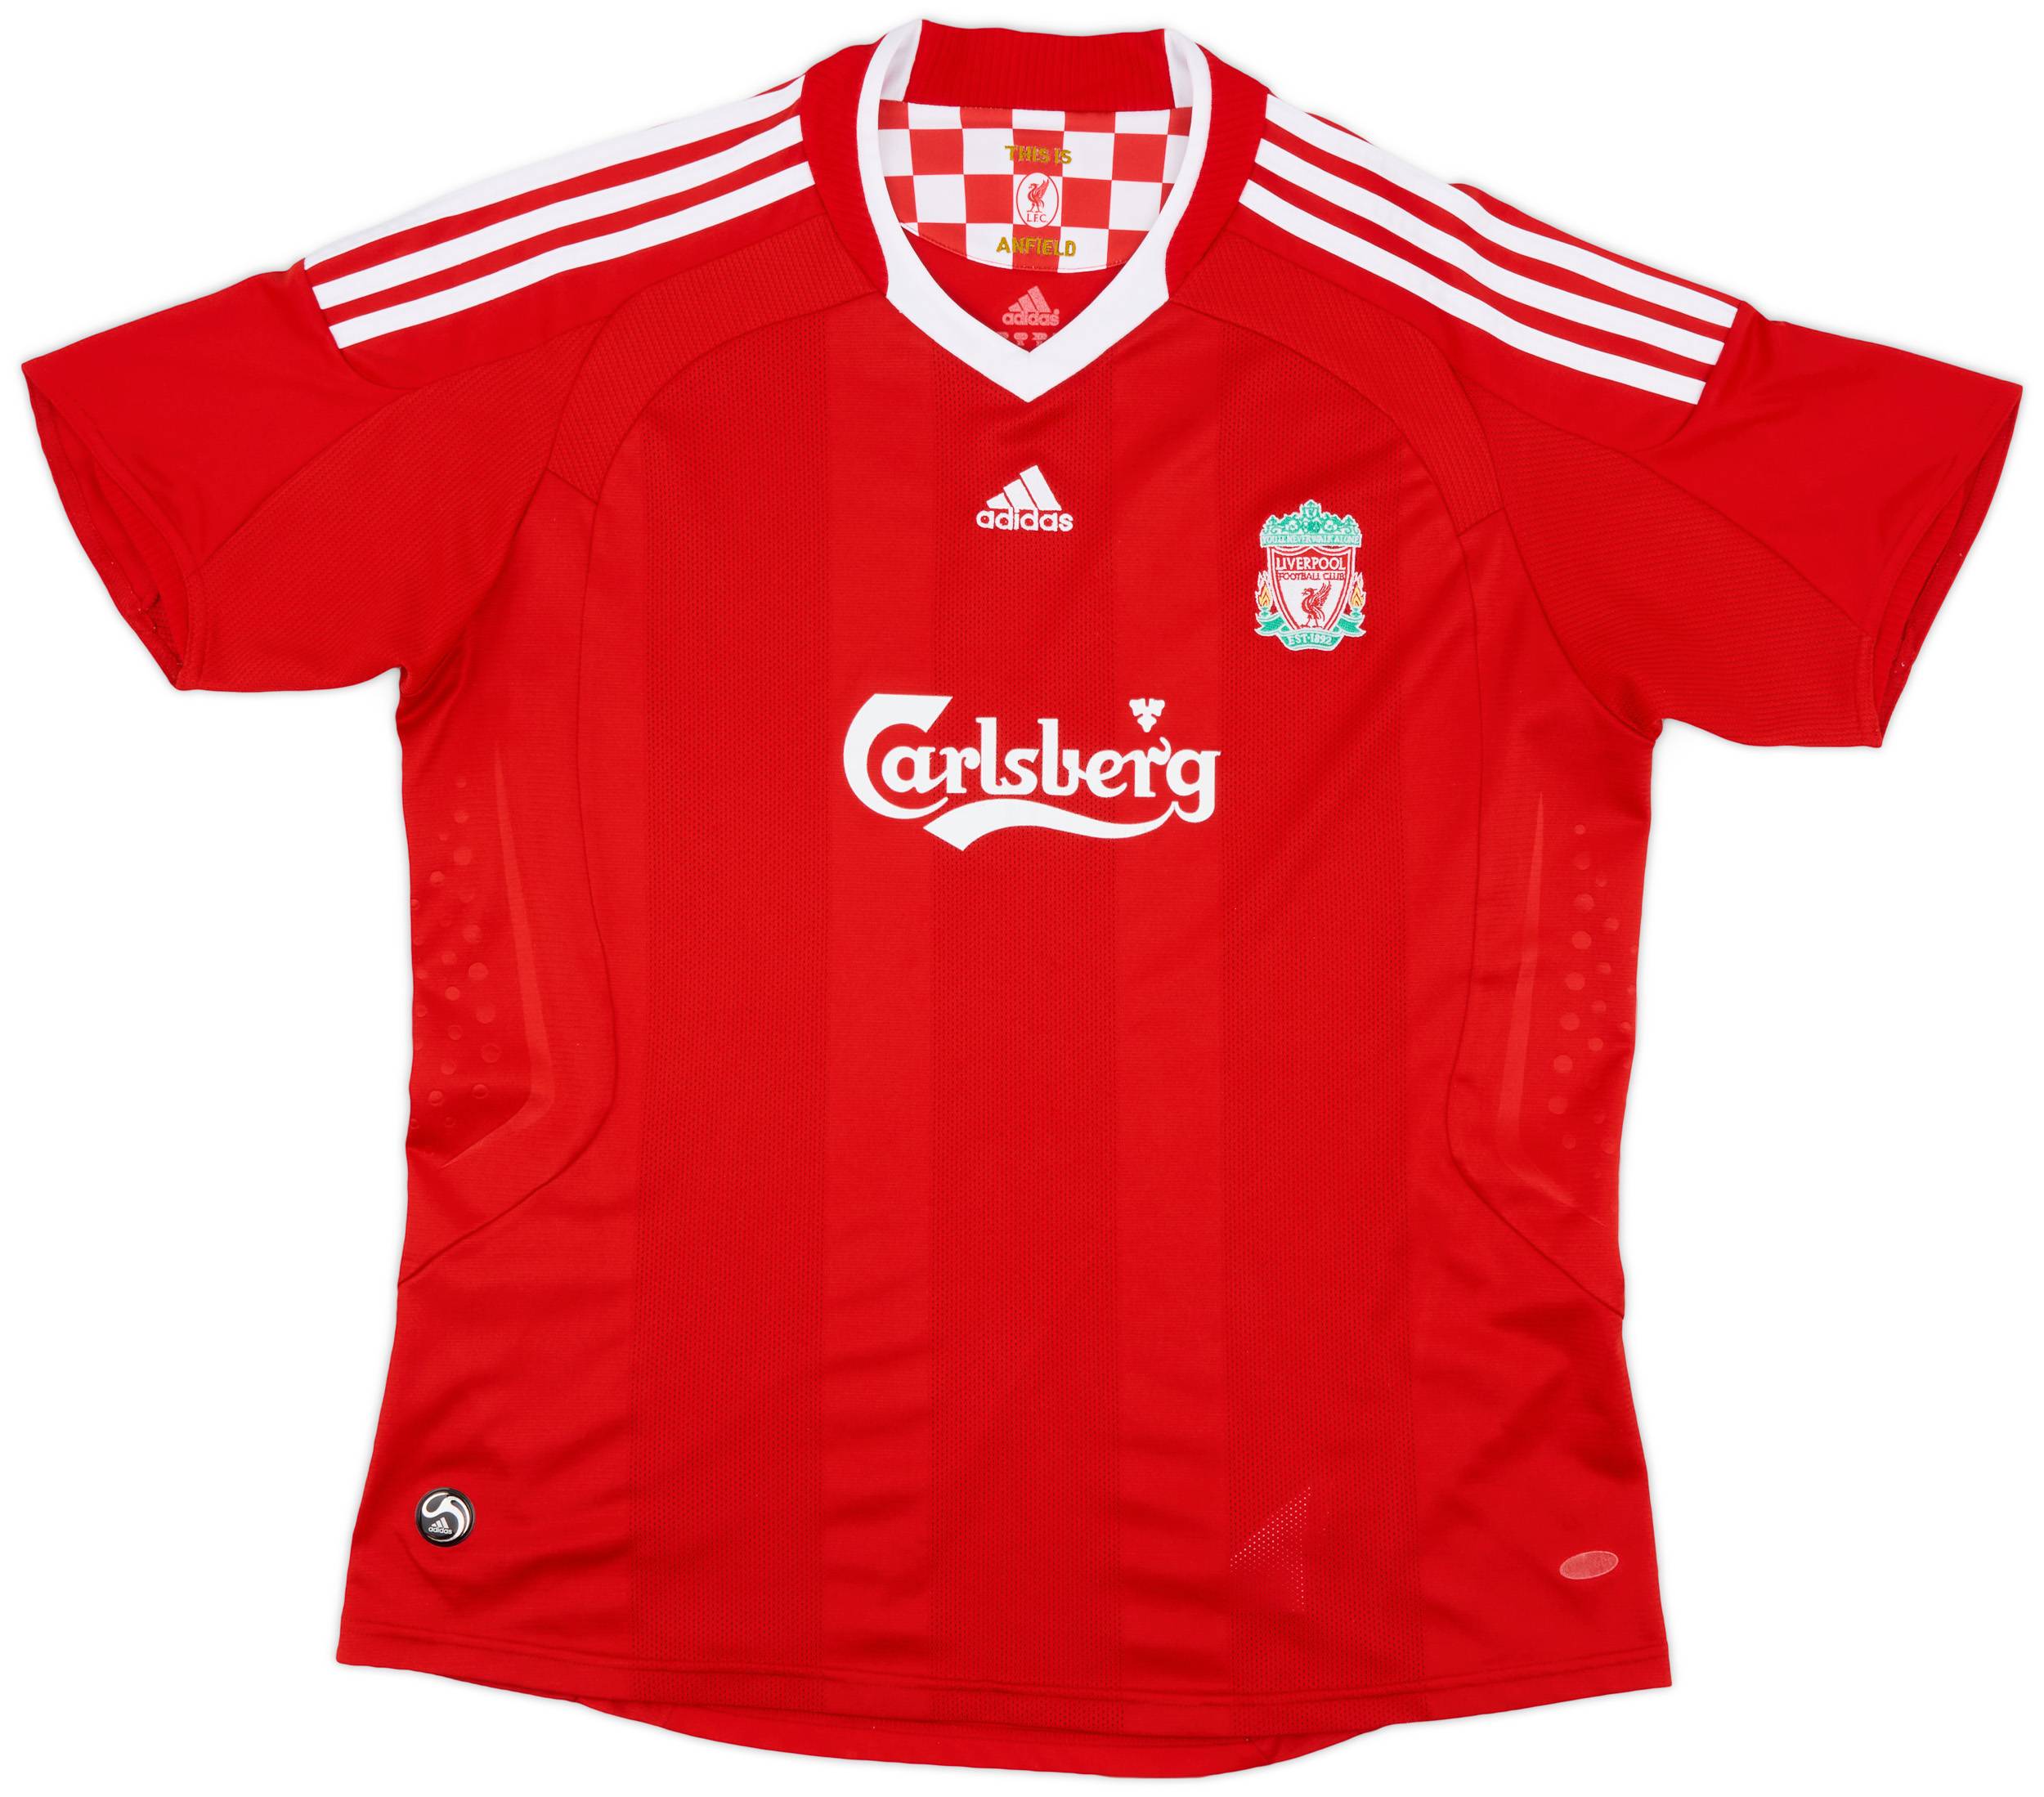 2008-10 Liverpool Home Shirt - 8/10 - (Women's XL)